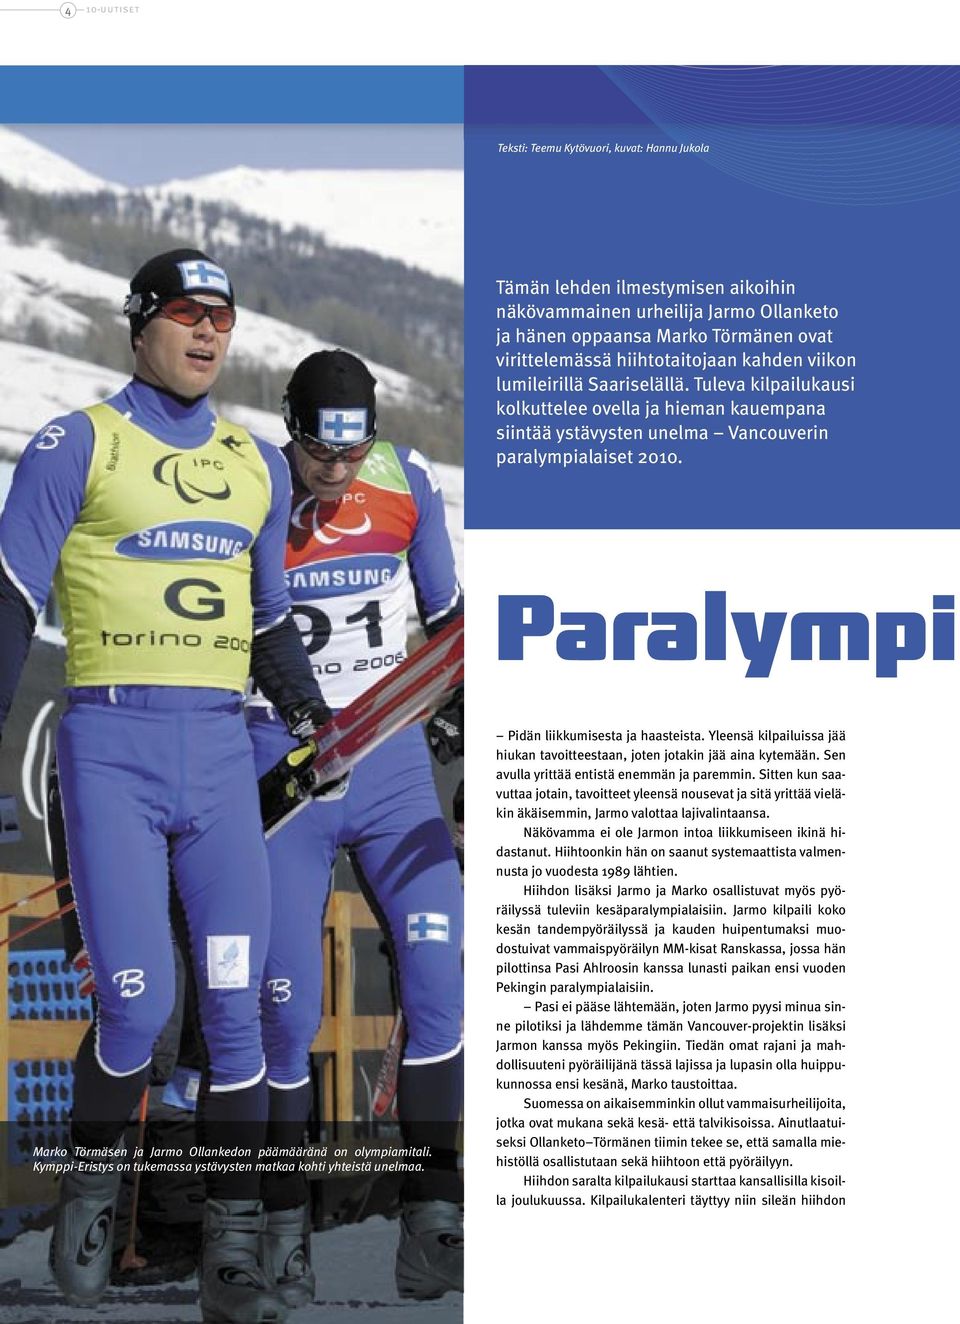 Paralympi Marko Törmäsen ja Jarmo Ollankedon päämääränä on olympiamitali. Kymppi-Eristys on tukemassa ystävysten matkaa kohti yhteistä unelmaa. Pidän liikkumisesta ja haasteista.